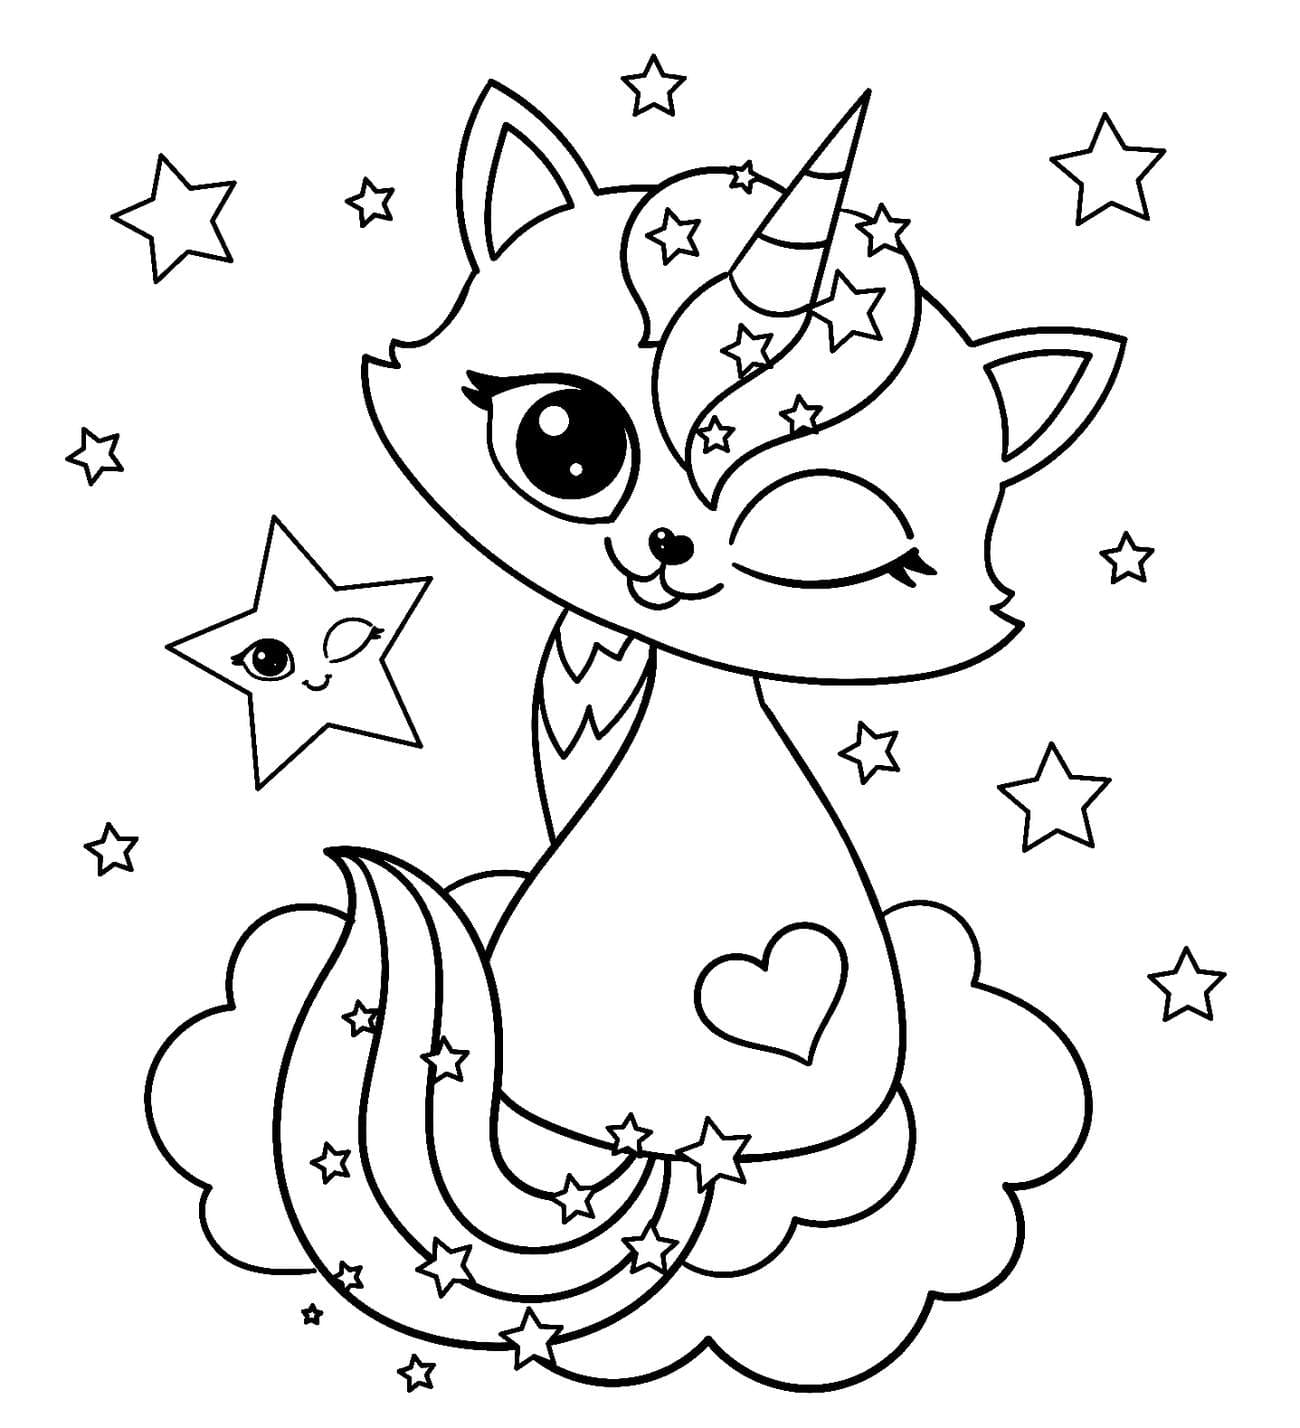 Para Colorear Gato-Unicornio entre las estrellas